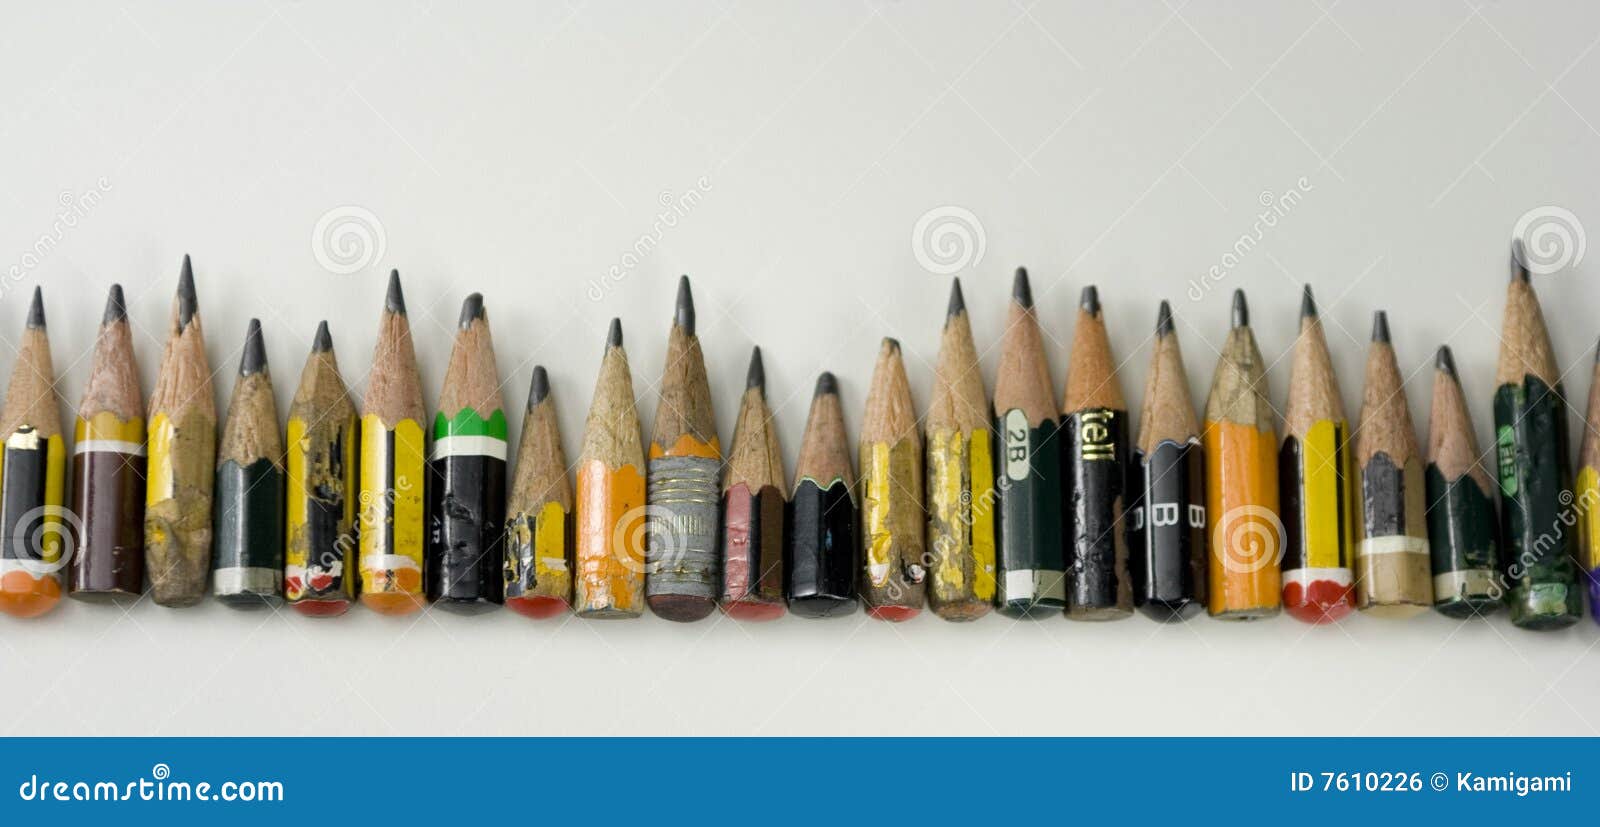 coloured little pencils